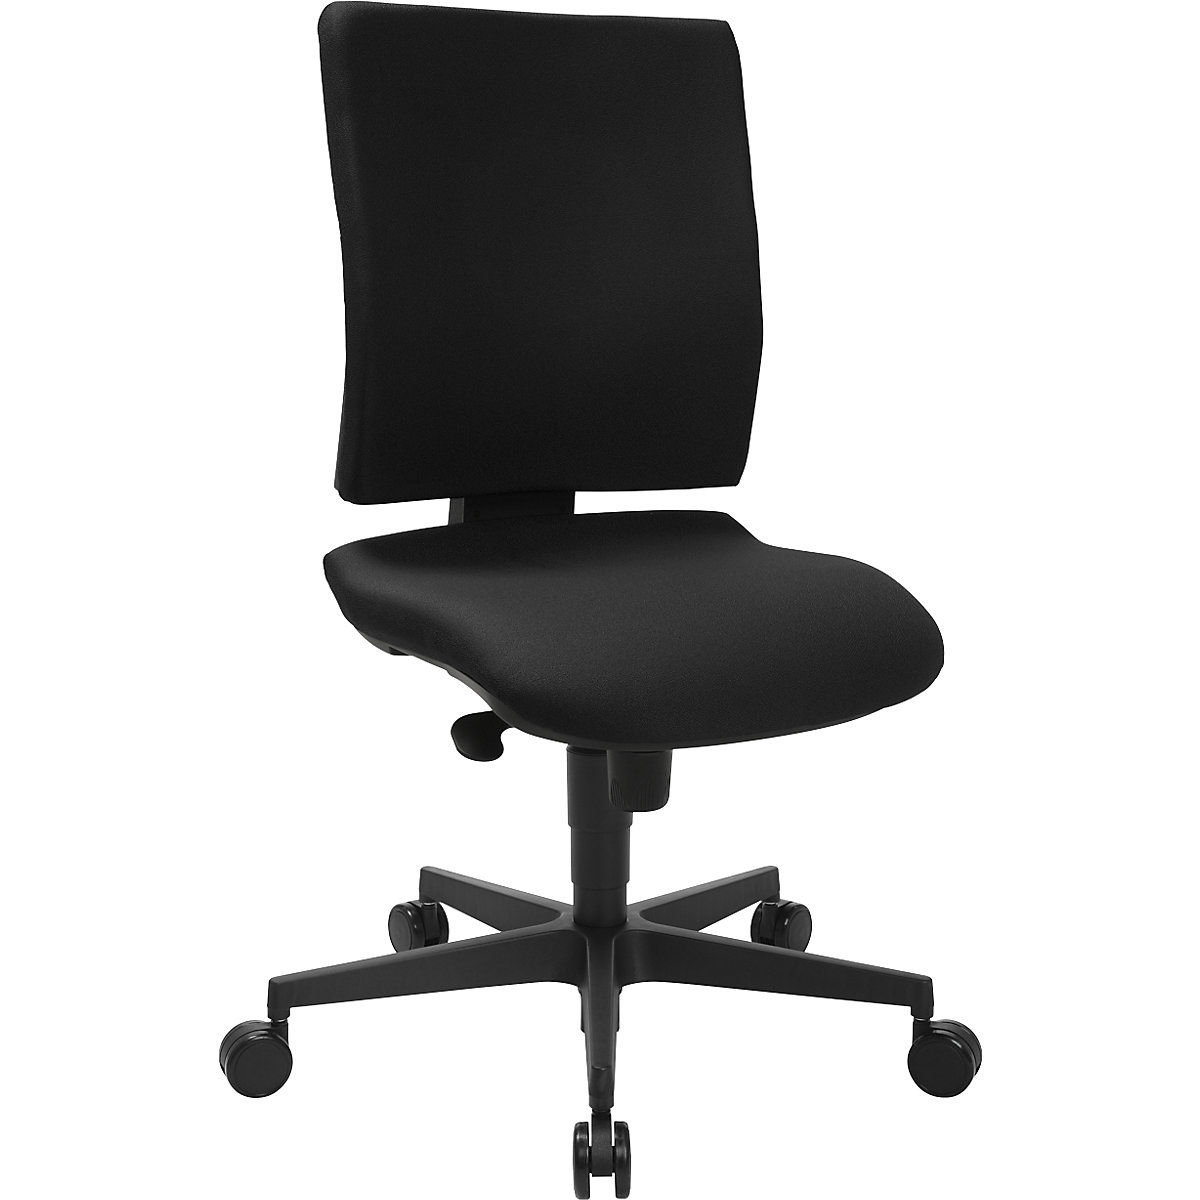 Uredska okretna stolica SYNCRO CLEAN – Topstar, antibakterijska tekstilna presvlaka, u crnoj boji-13